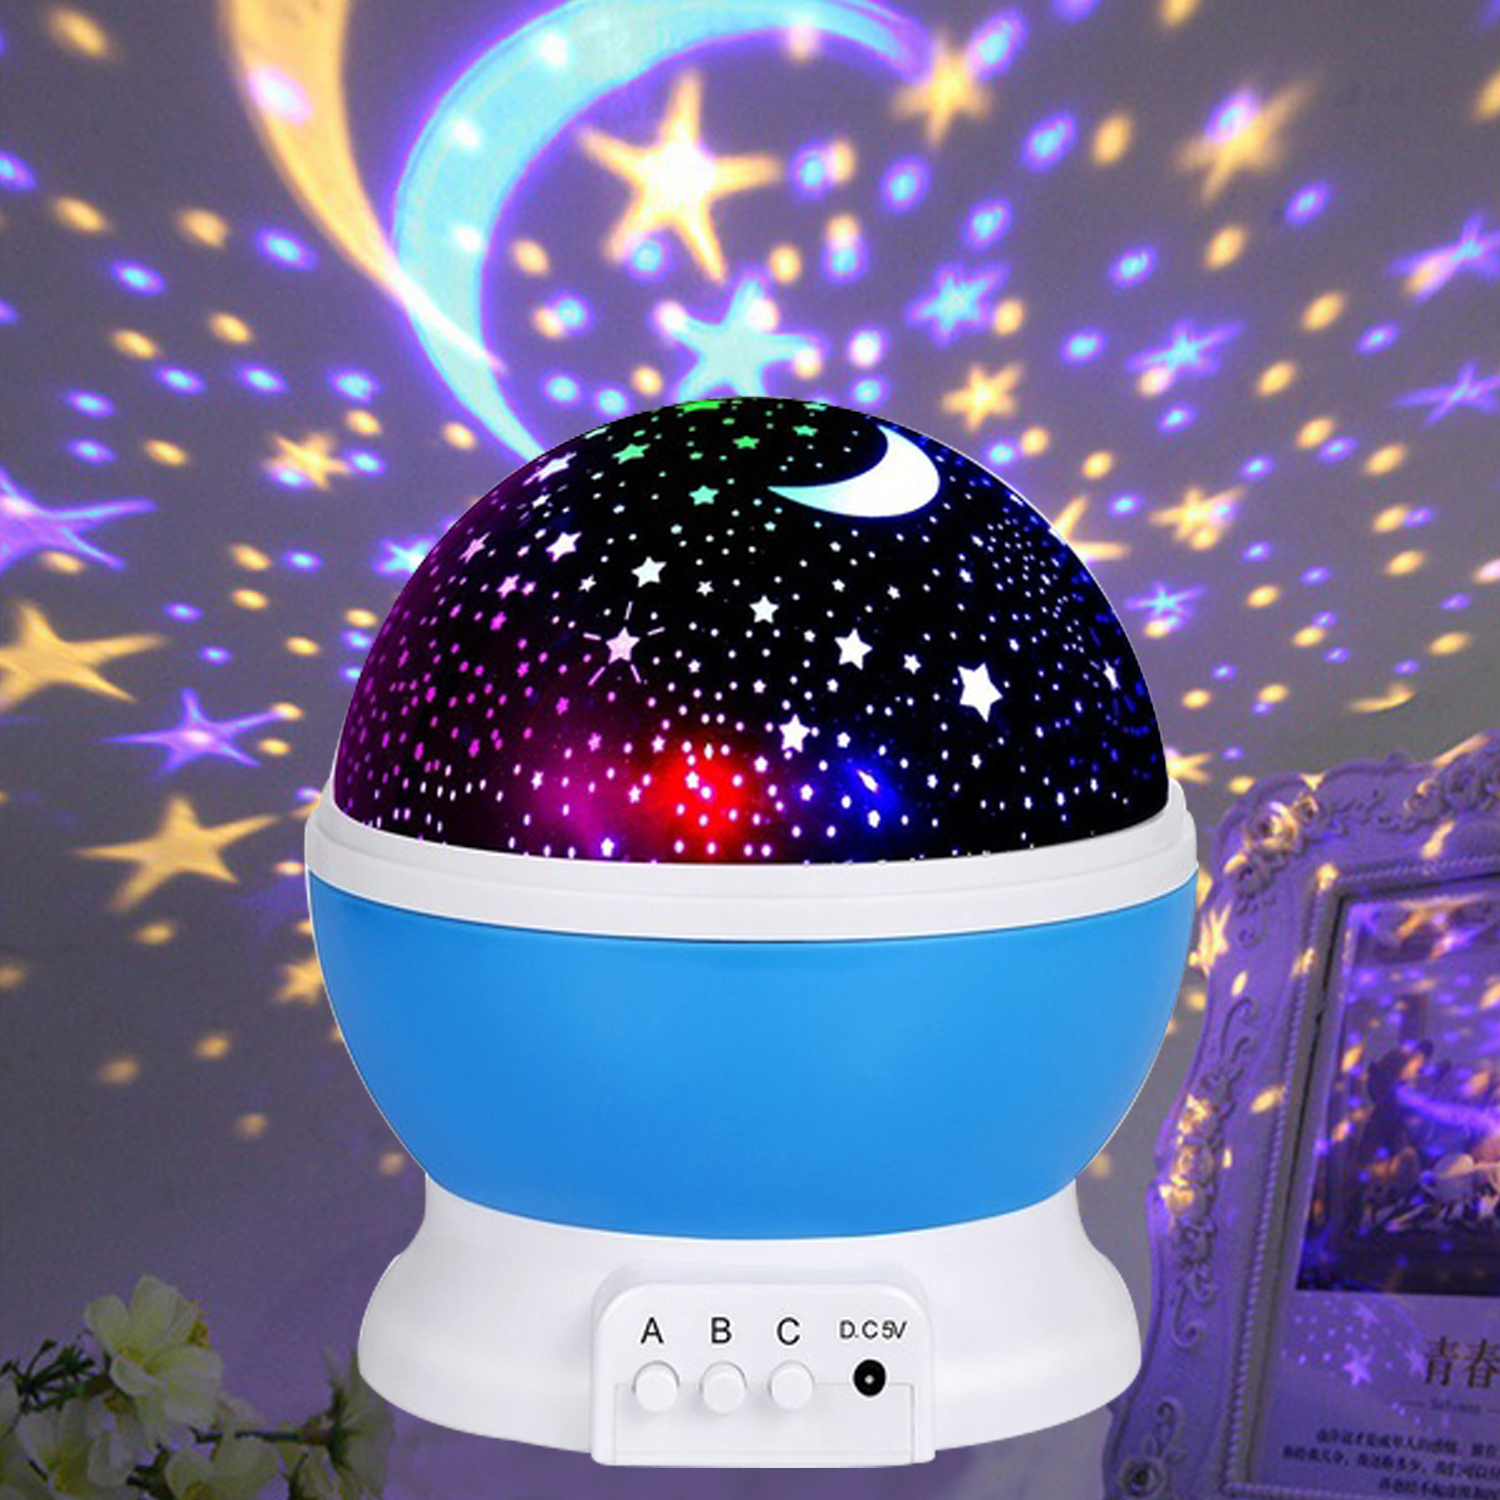 Proyector giratorio Led Luna cielo estrellado luz de noche lámpara de luz nocturna con pilas para niños habitación de bebé luces decoradas